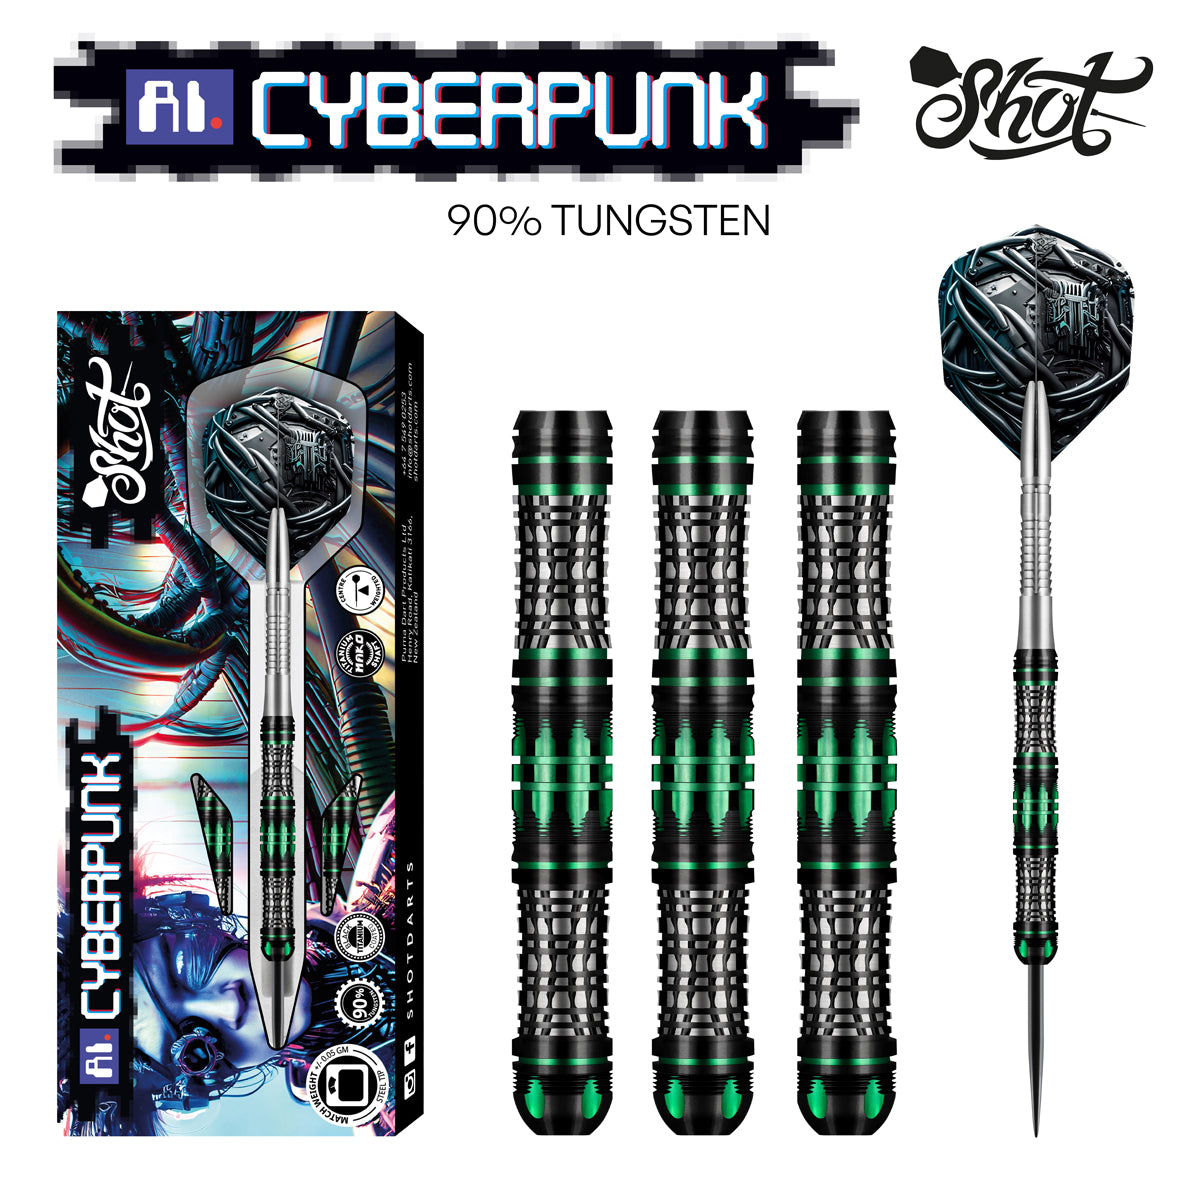 Shot AI Cyberpunk Steel Tip Dart Set 90% Tungsten Barrels 24g